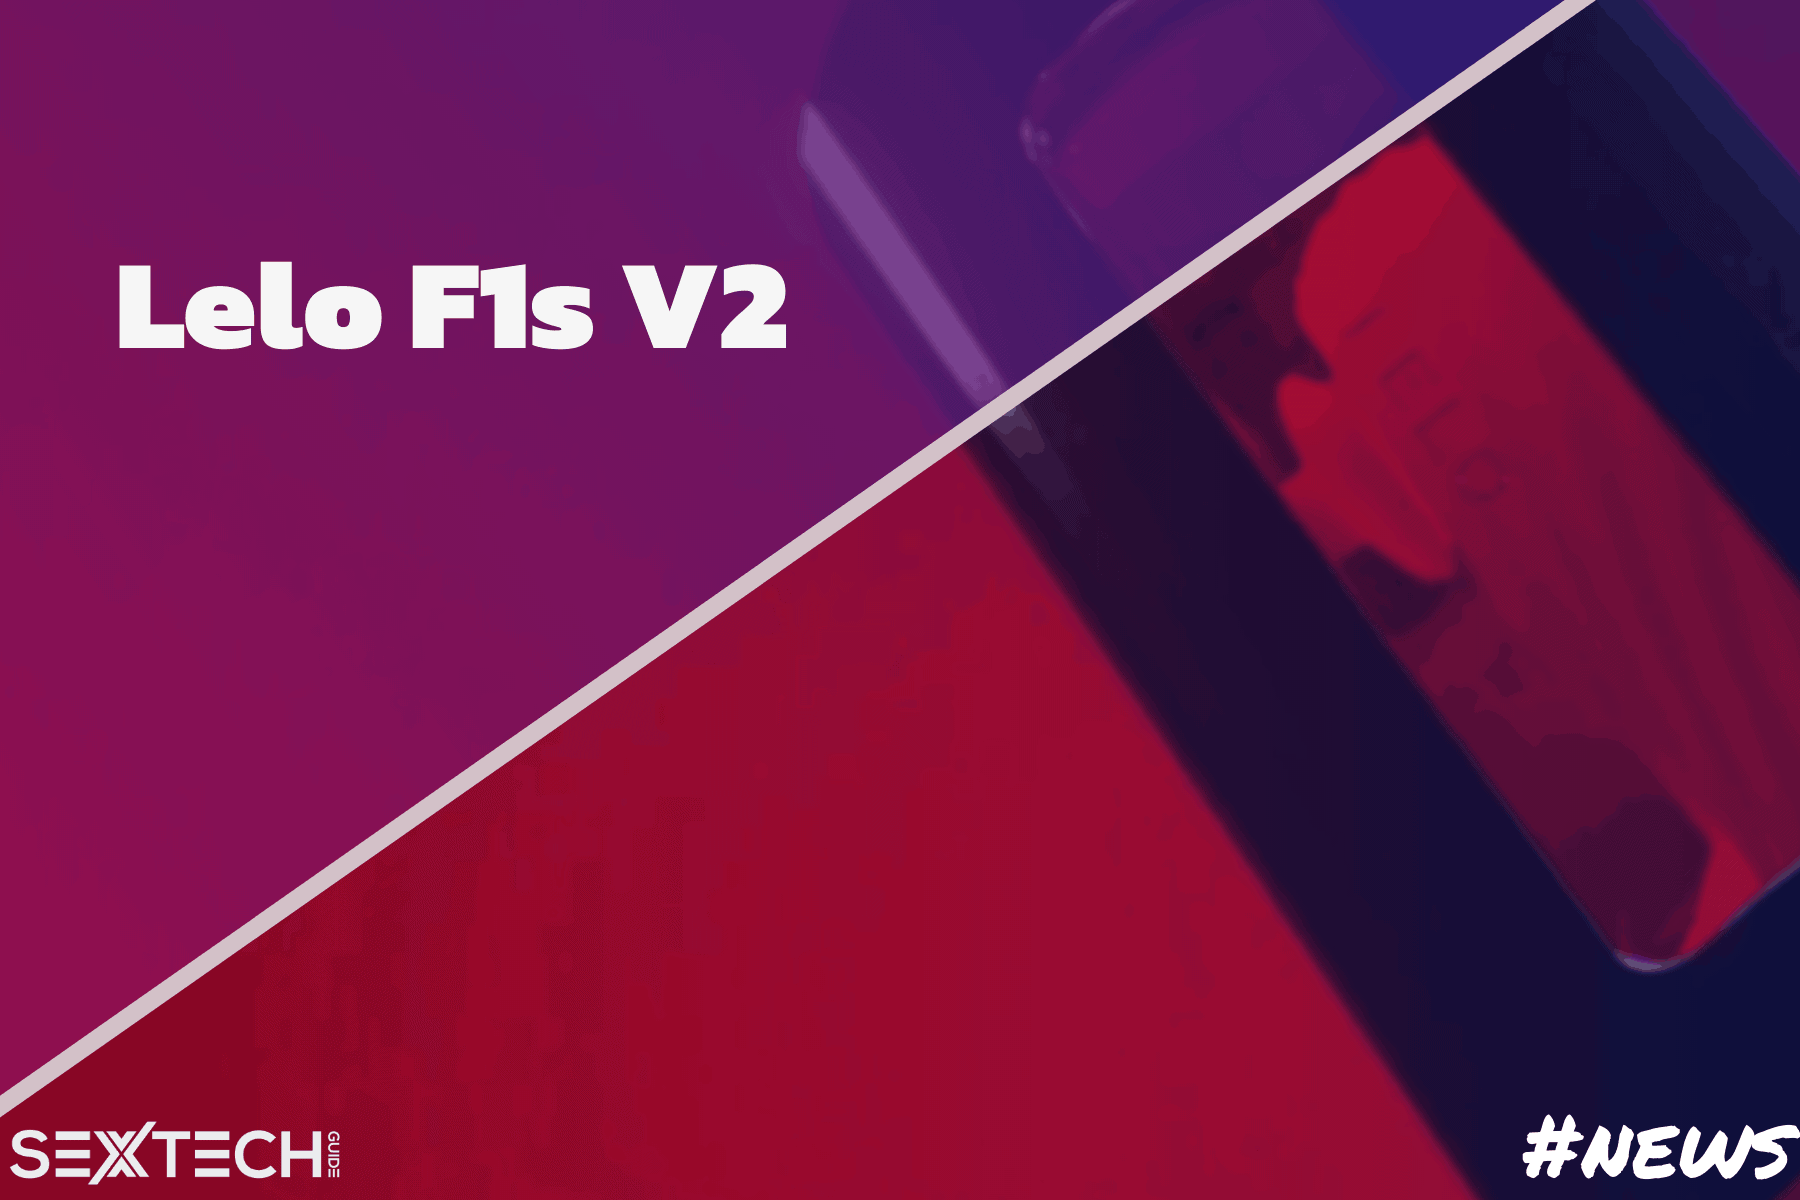 Lelo F1s V2